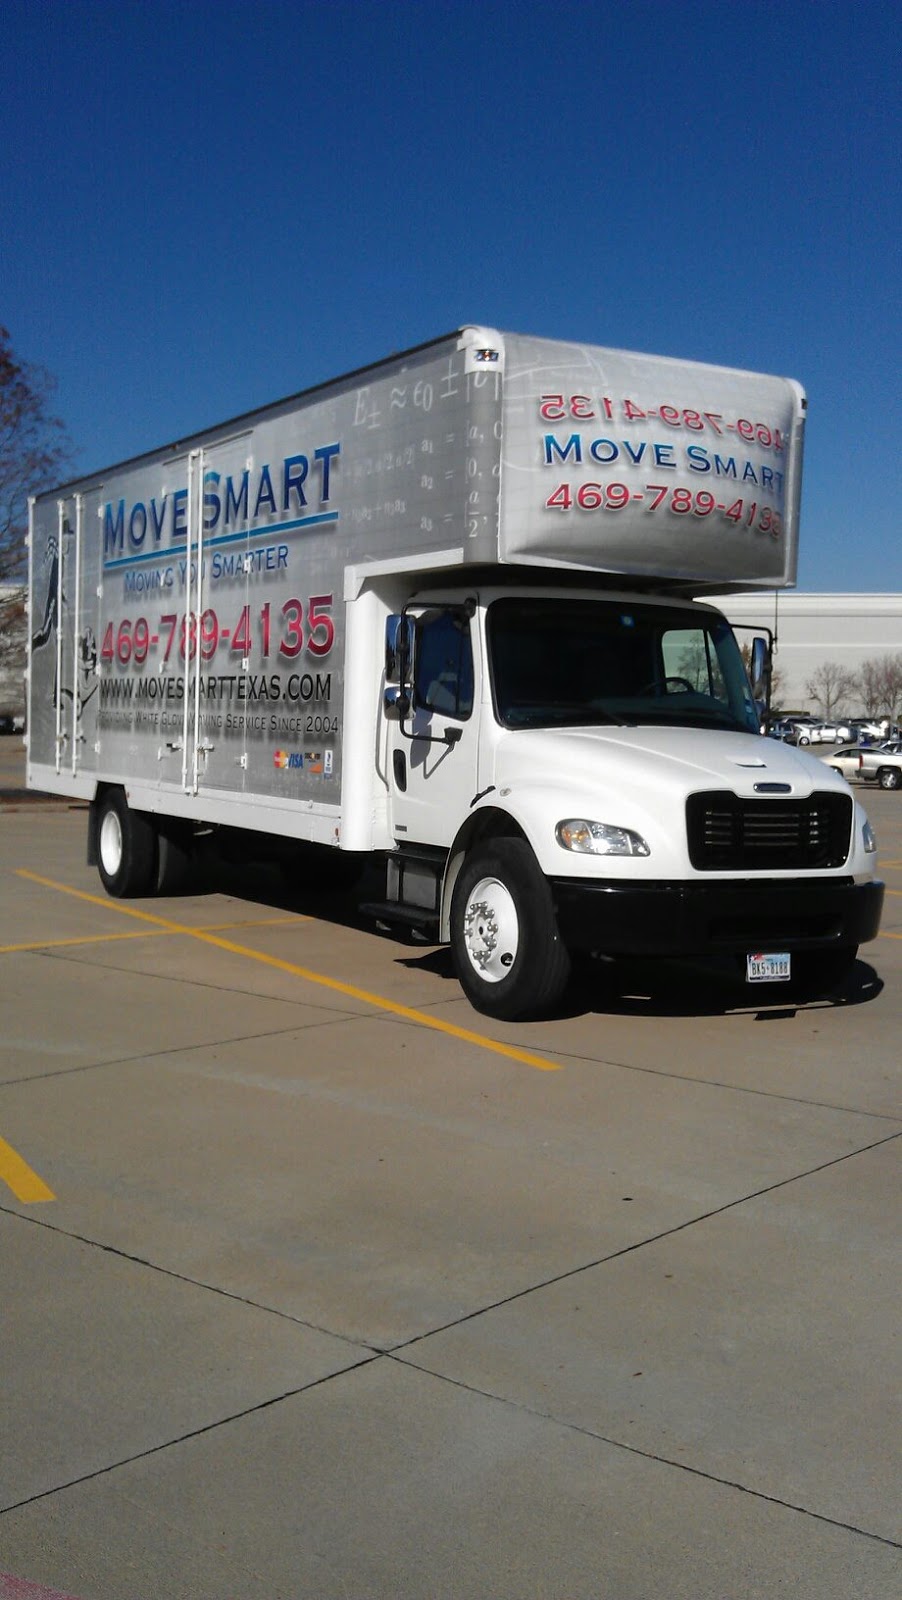 Move Smart LLC | 2831 Eldorado Pkwy #103-173, Frisco, TX 75033, USA | Phone: (469) 789-4135